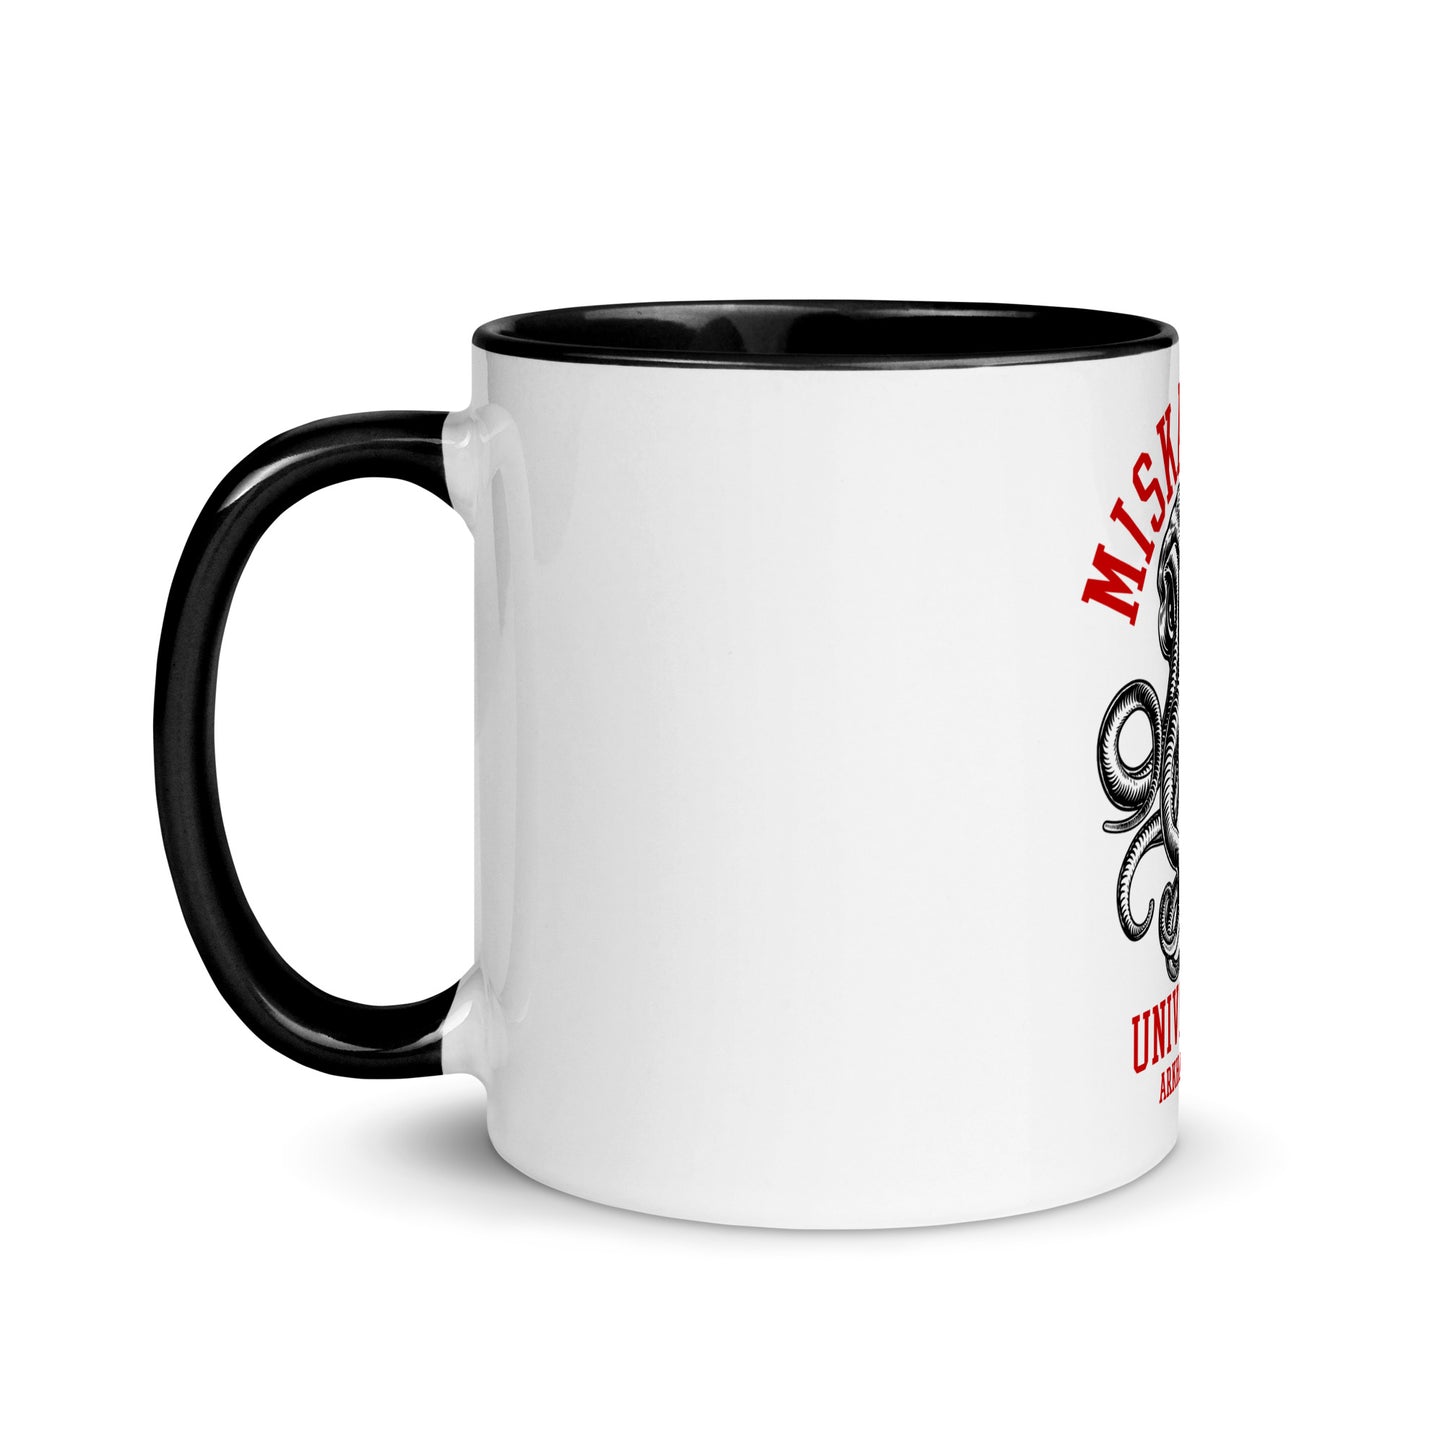 RAYGUN Miskatonic Mug with Black Color Inside